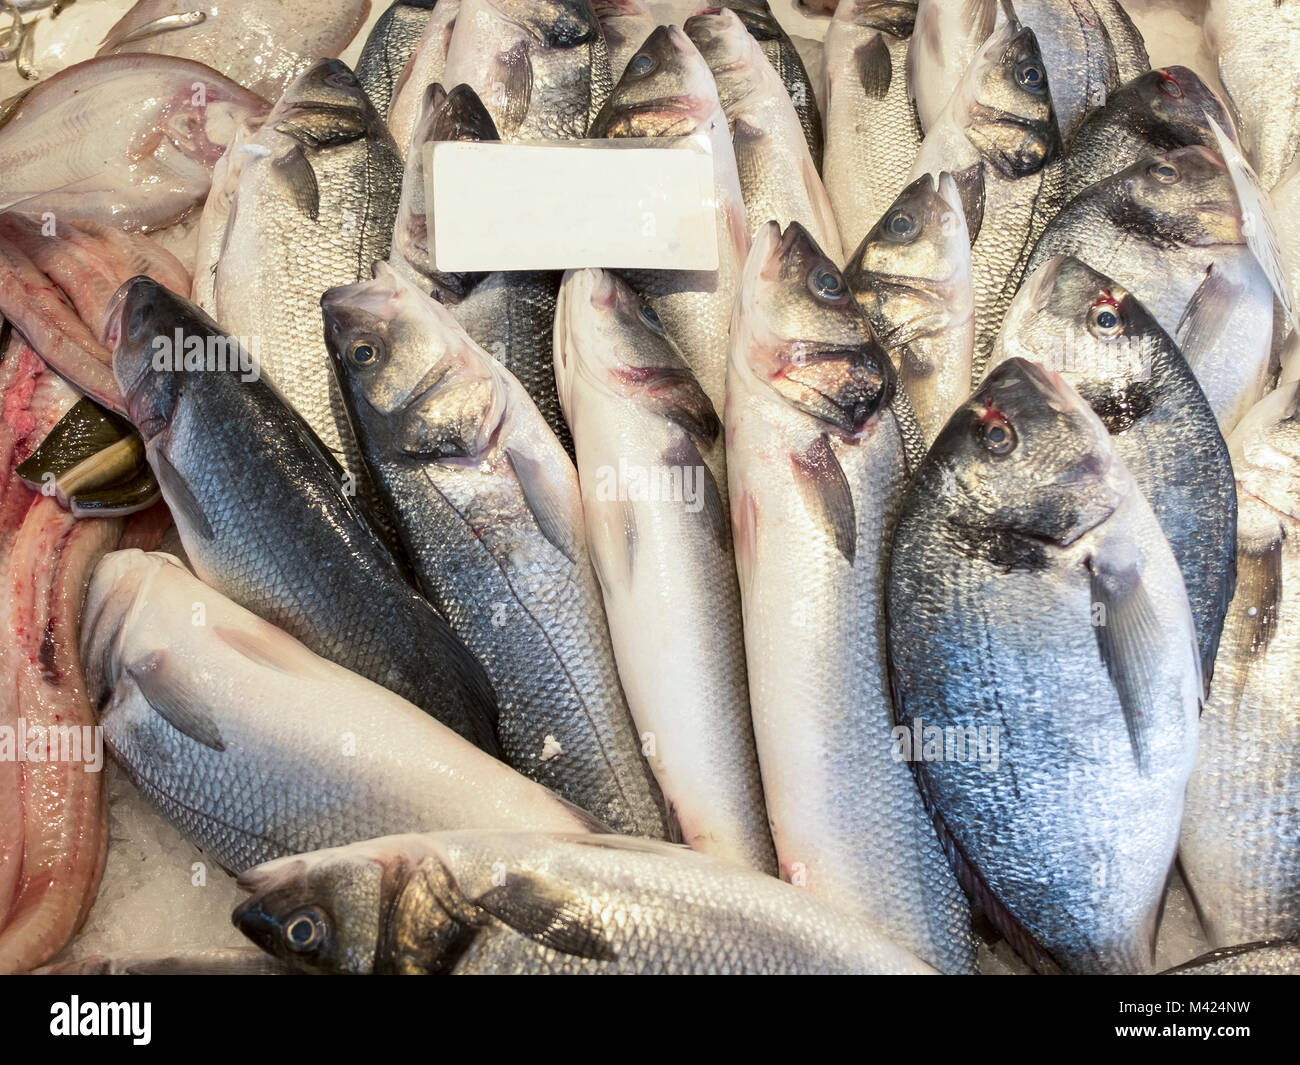 Close up appena pescato il pesce fresco. I pesci di diverse specie è diffusa in file sovrapposte con le teste rivolte verso l'alto. Foto Stock